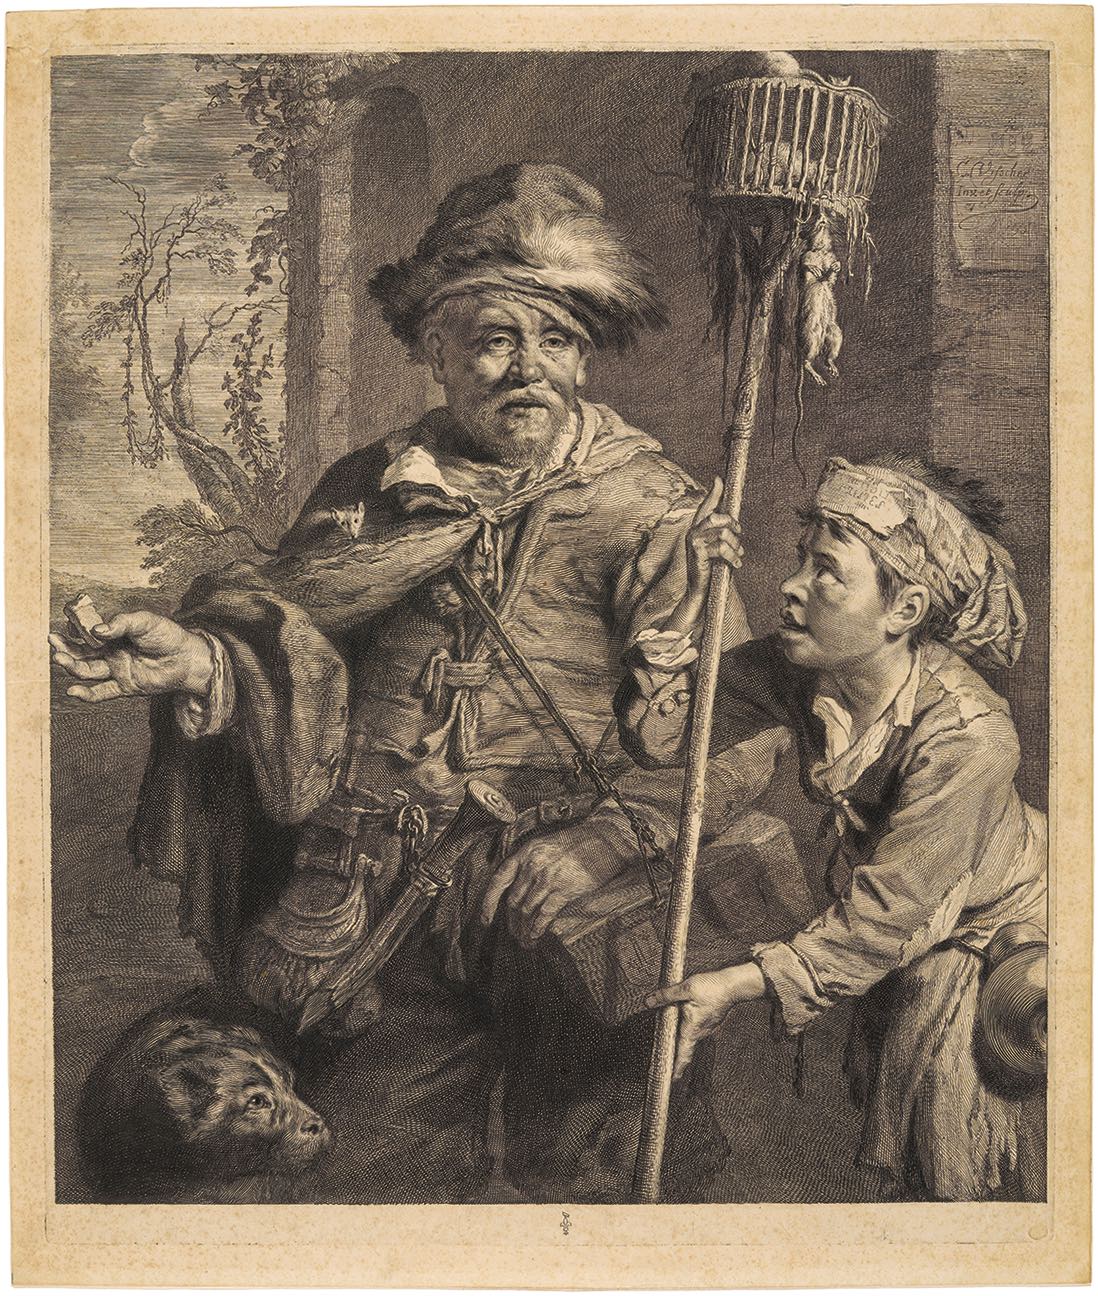 Cornelis Visscher (1629-1662), Le marchand de mort-aux-rats, 1655. Eau-forte et burin sur papier vergé, 40 x 34 cm. Chantilly, musée Condé. Photo service de presse. © RMN-Grand Palais / Domaine de Chantilly / Michel Urtado